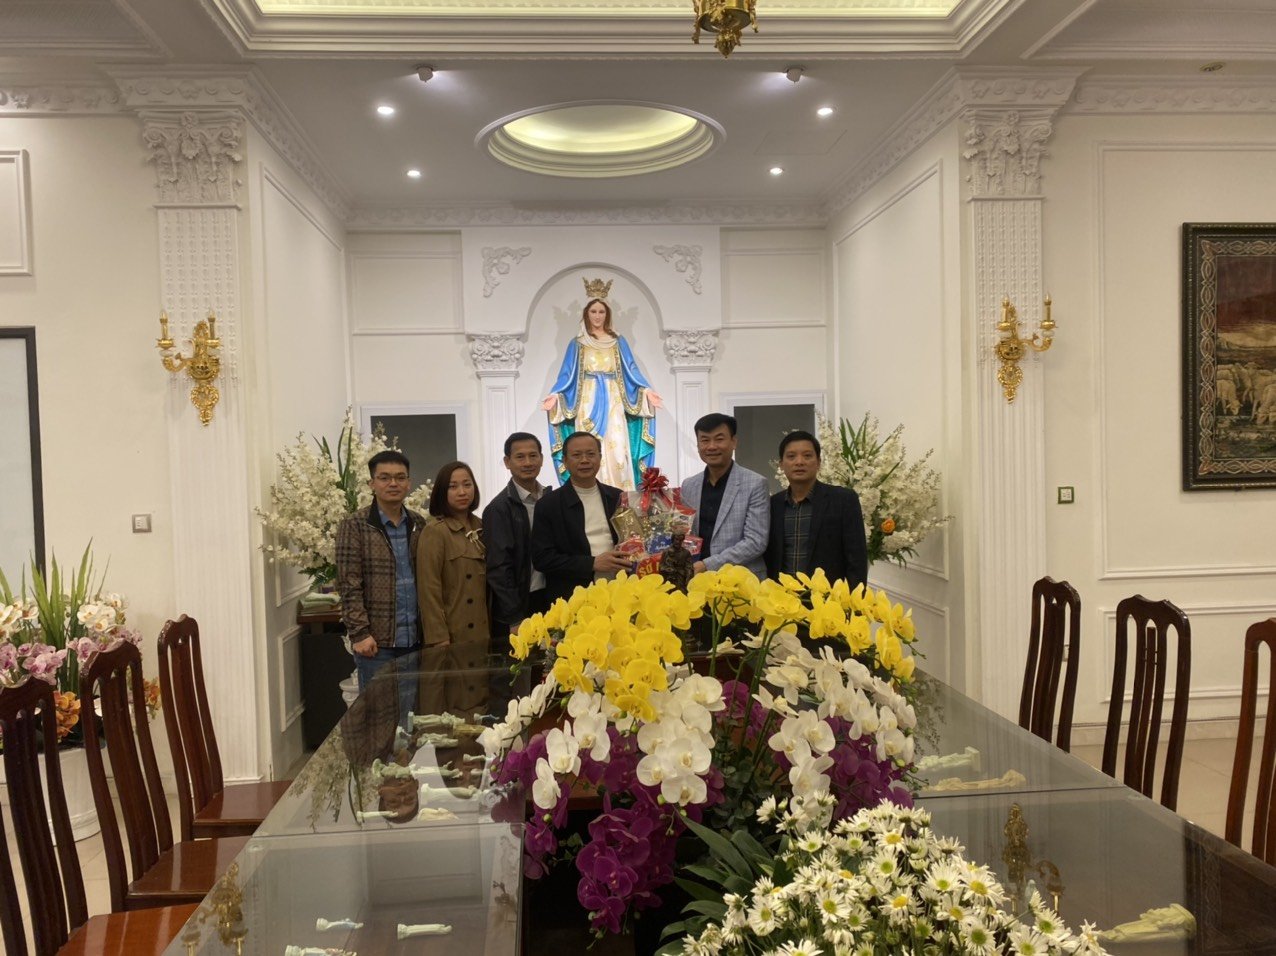 Sở Nội vụ tỉnh Hà Nam thăm, tặng quà một số chức sắc, chức việc tiêu biểu đạo Công giáo, Tin lành nhân dịp lễ Giáng sinh năm 2022